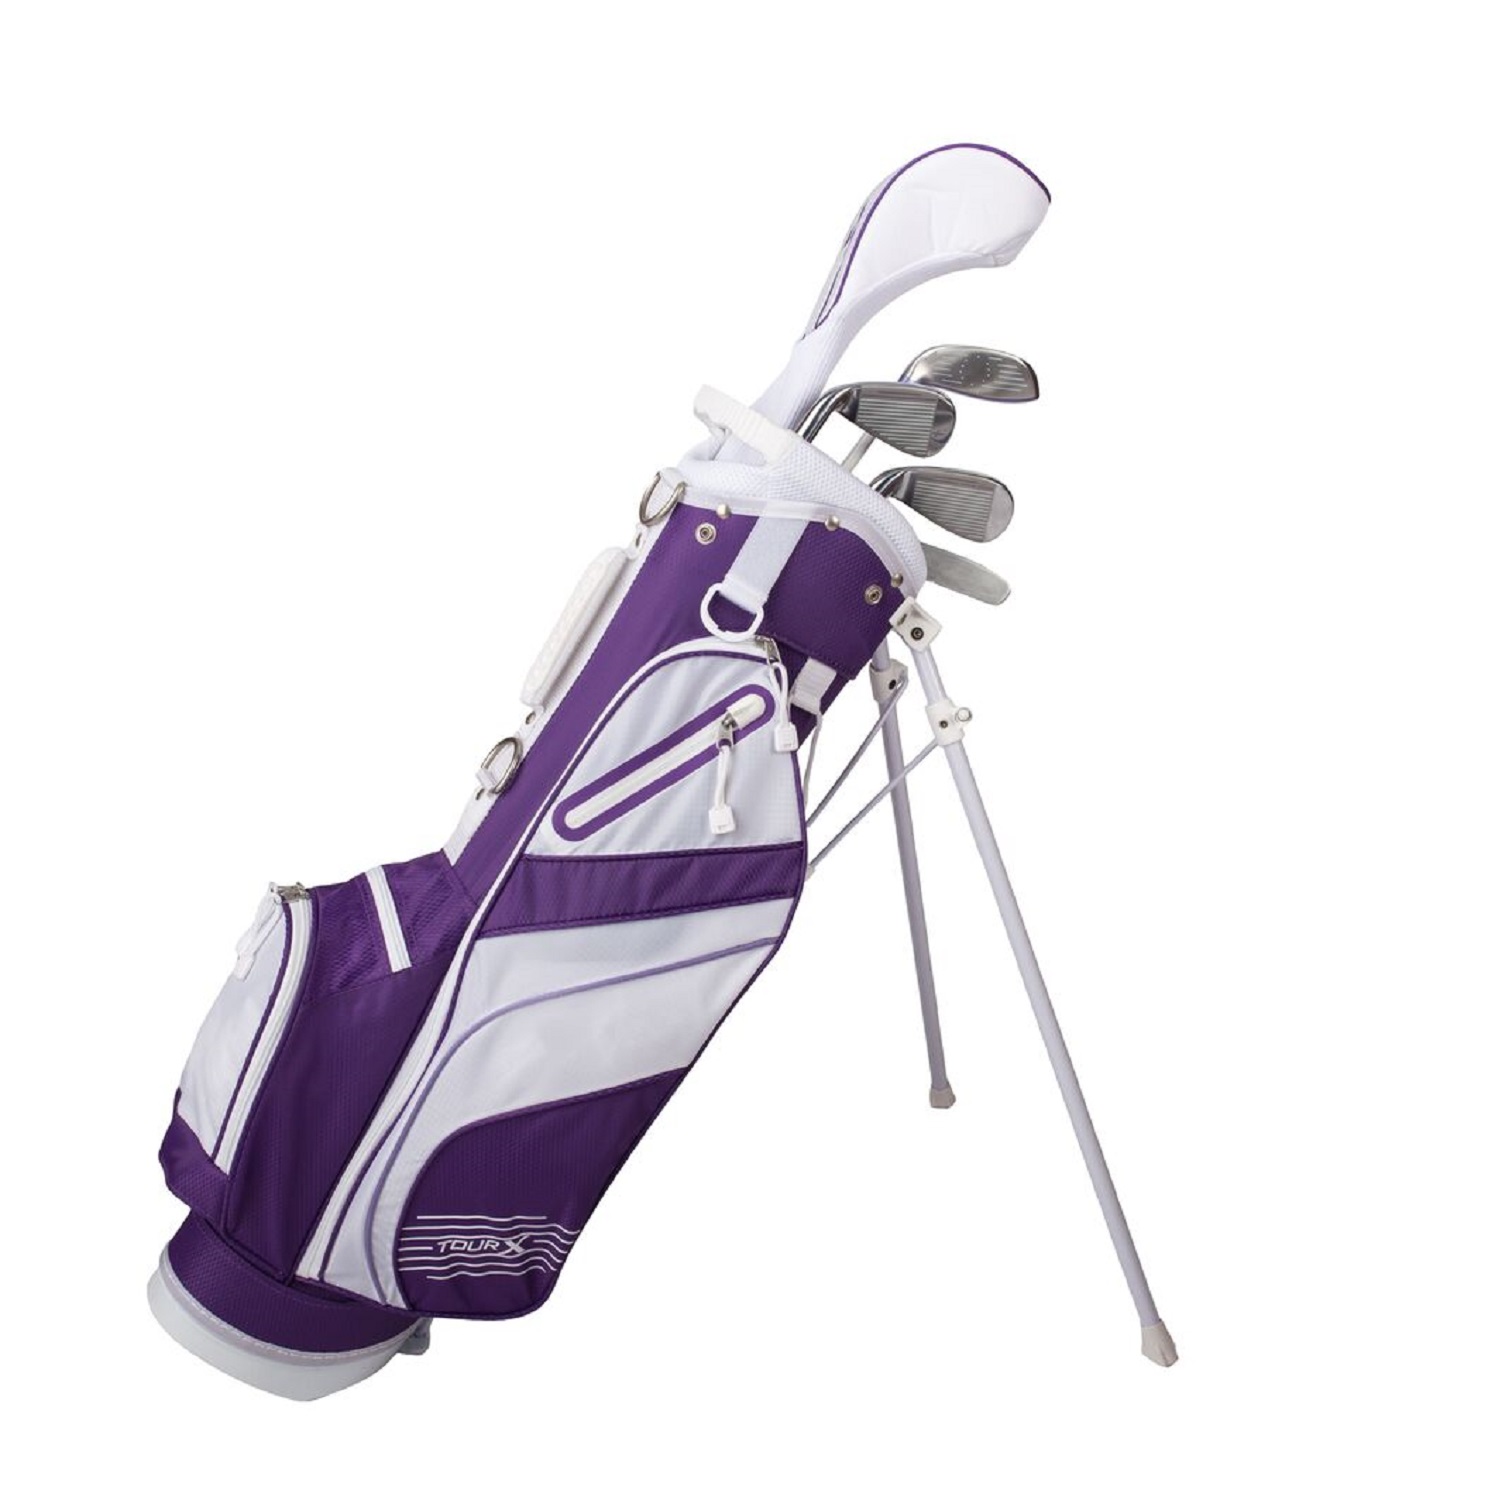 Tour X Size 3 Purple 5pc Jr Golf Set w/Stand Bag